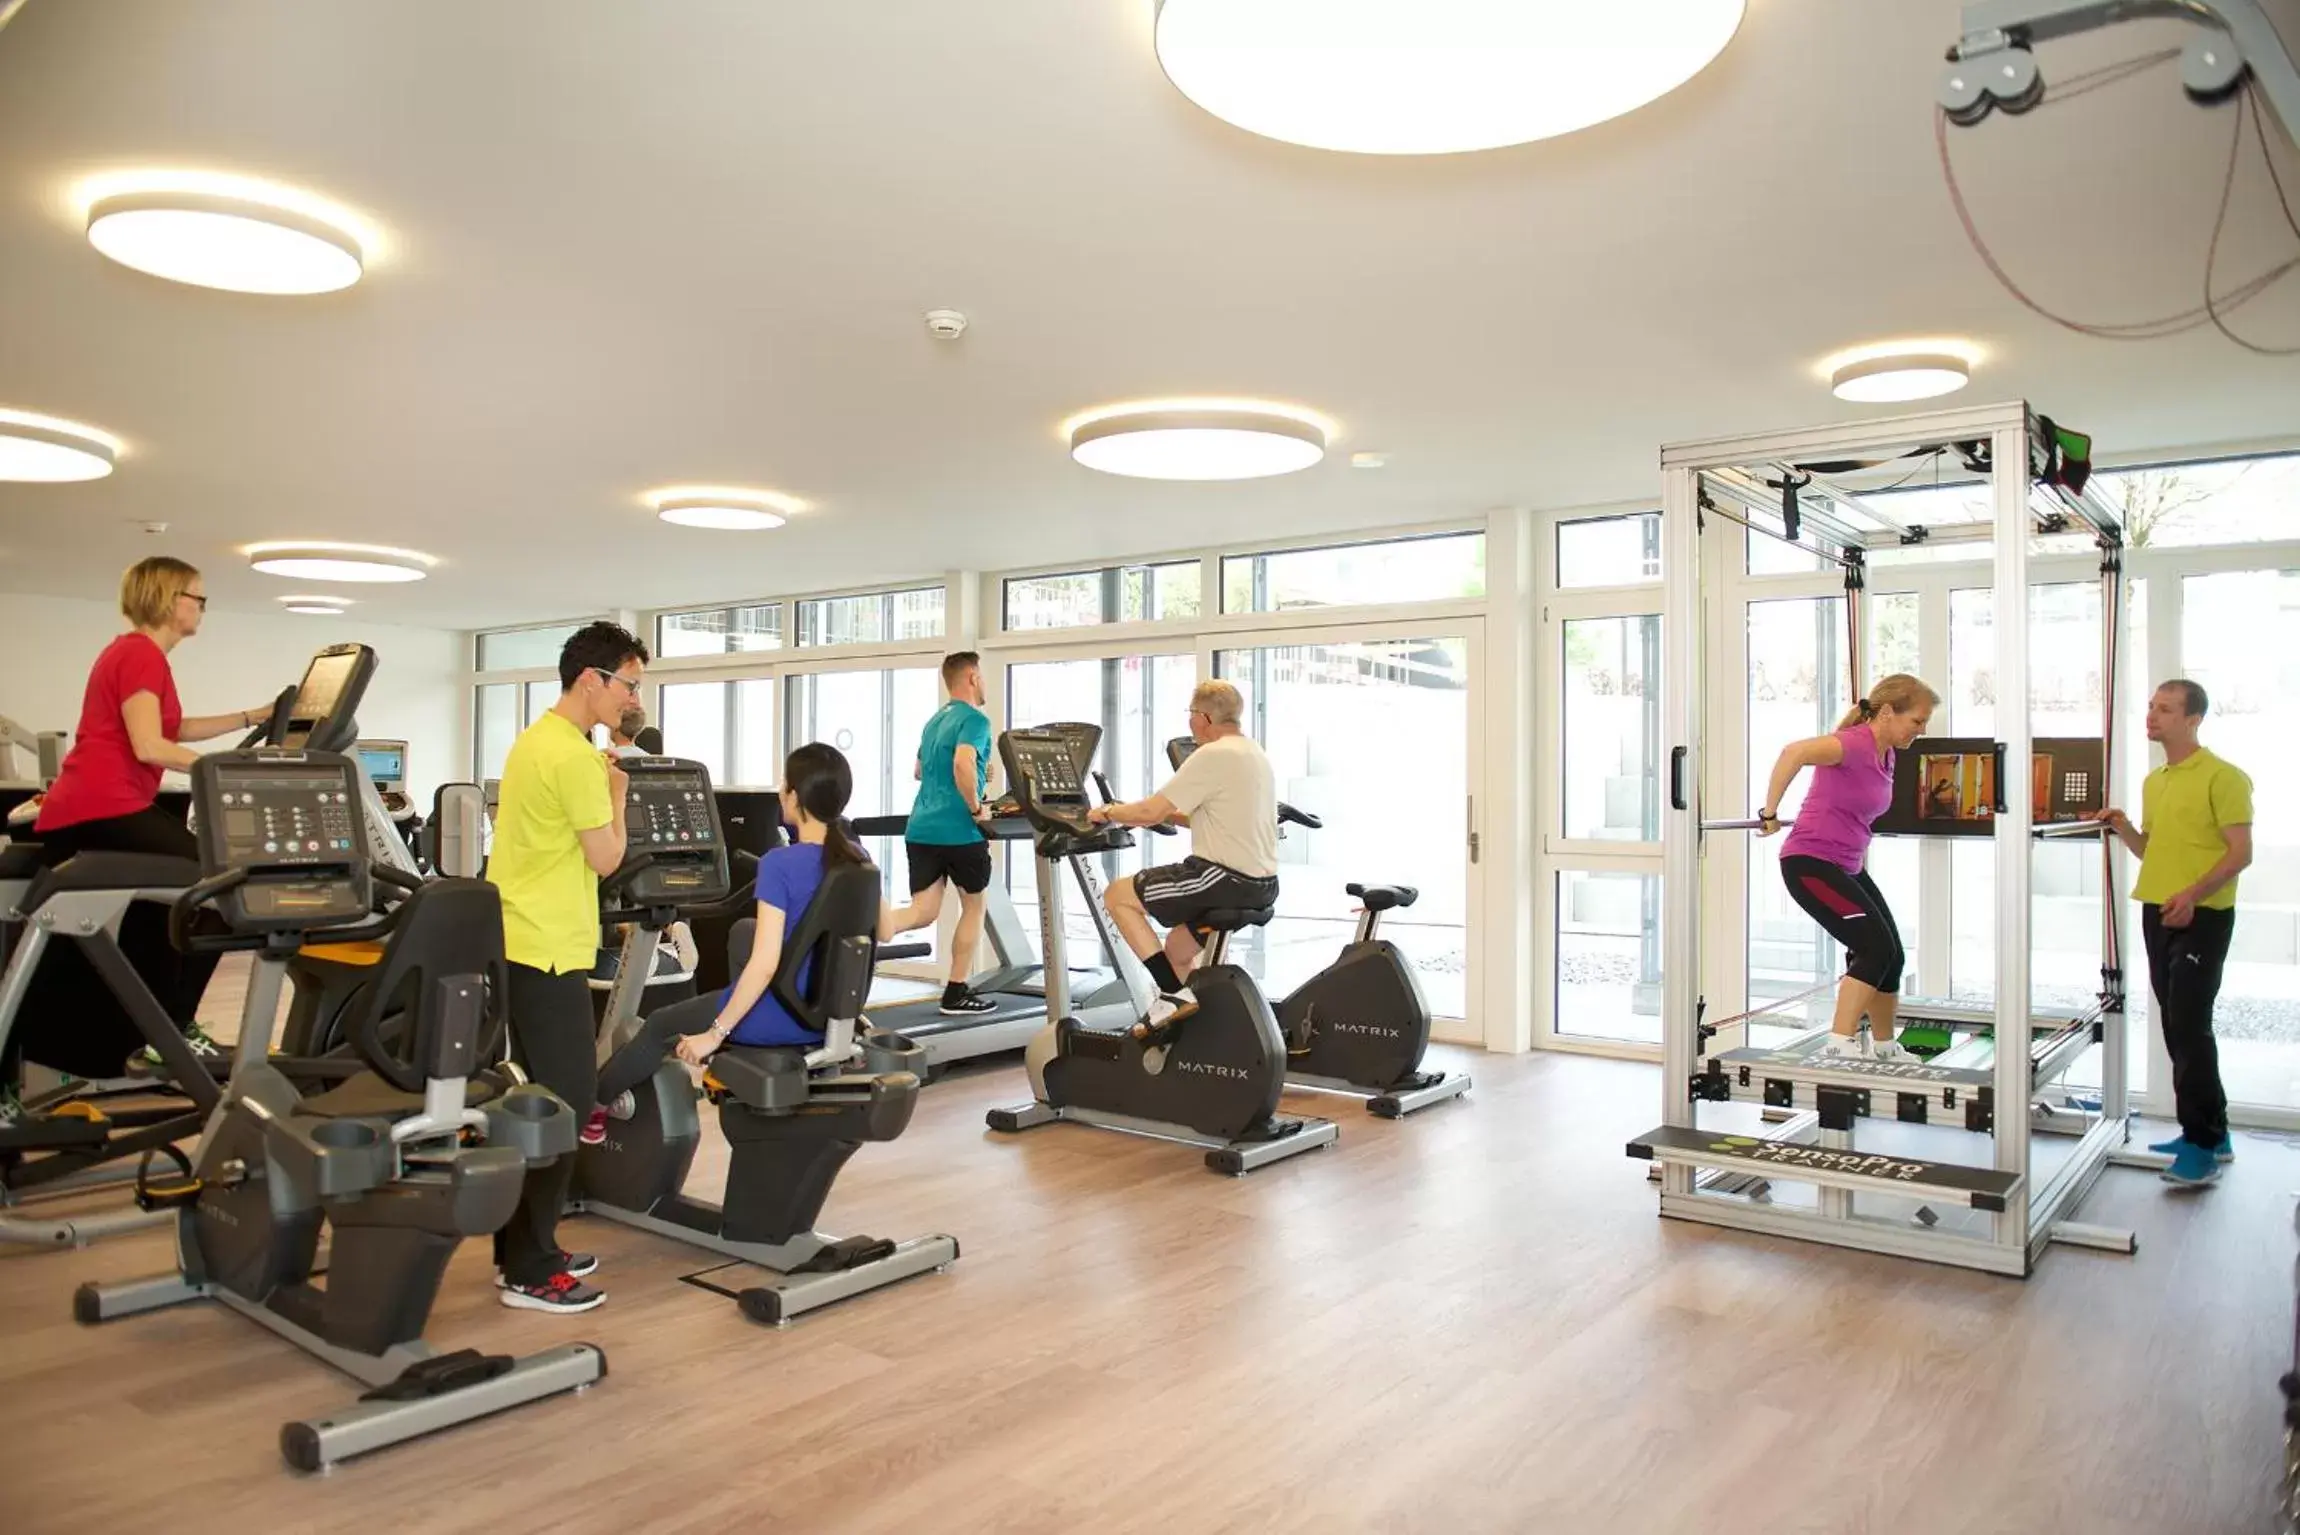 Fitness centre/facilities, Fitness Center/Facilities in Hotel Artos Interlaken